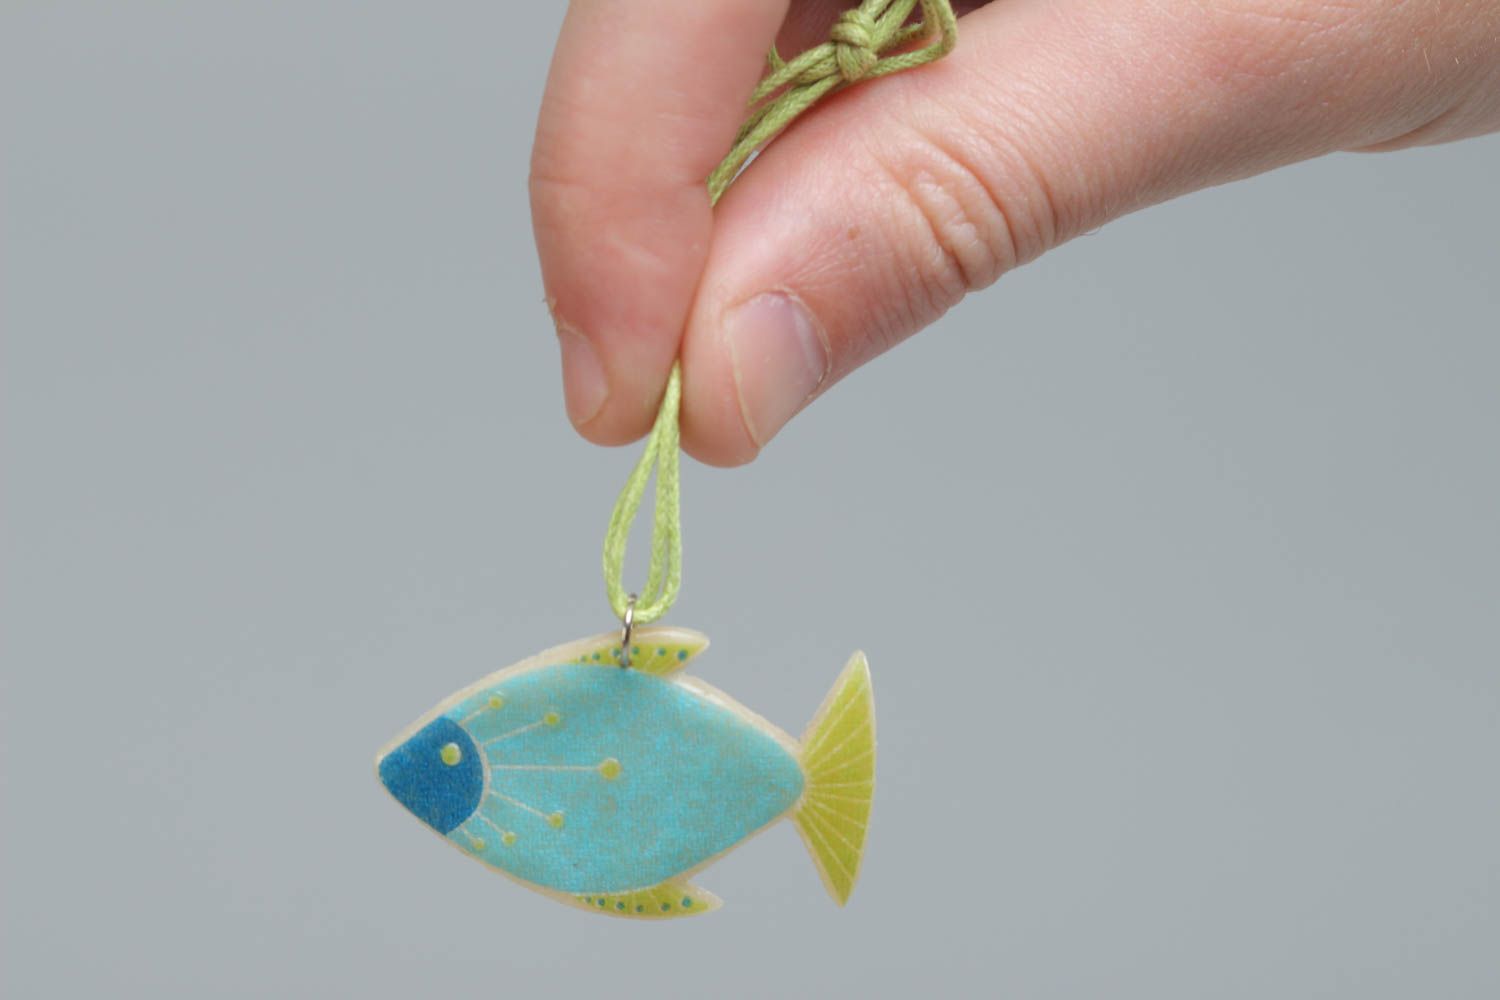 Handmade Fisch Anhänger aus Polymerton mit Print an Schnur schön künstlerisch foto 5